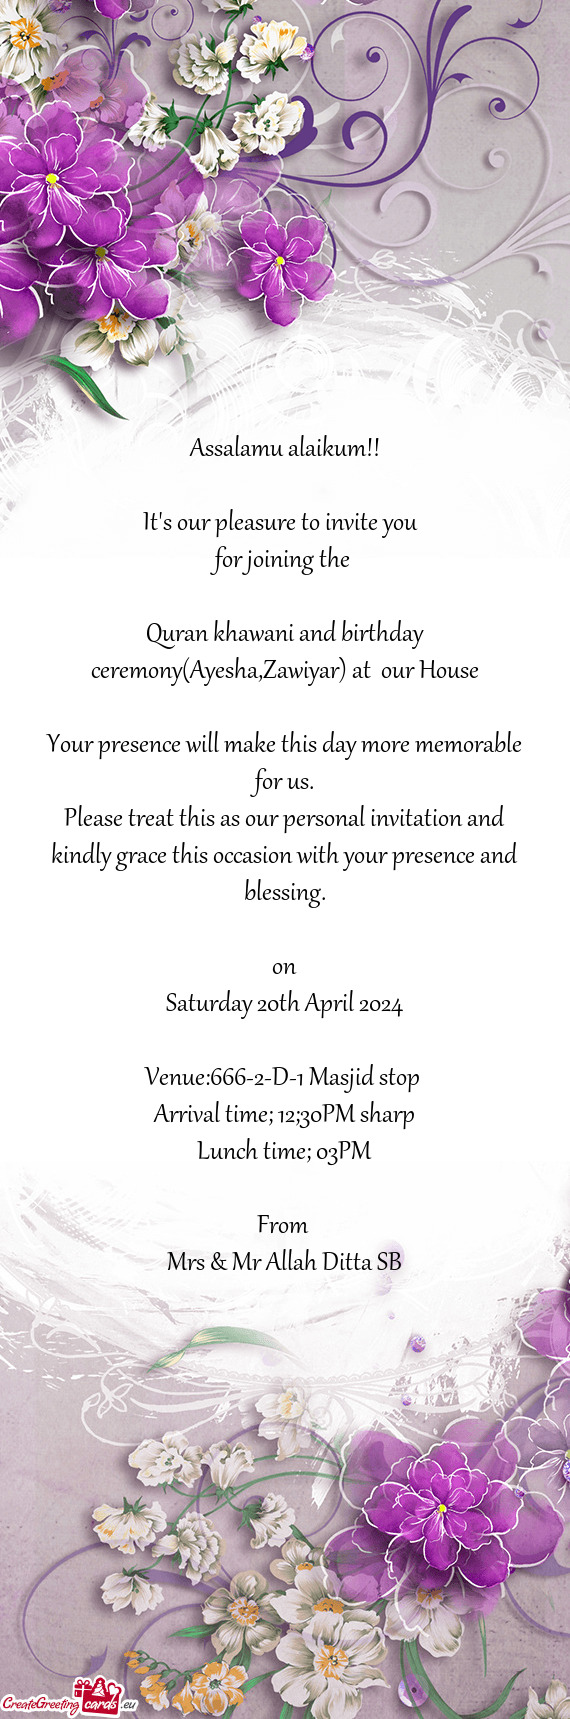 Quran khawani and birthday ceremony(Ayesha,Zawiyar) at our House